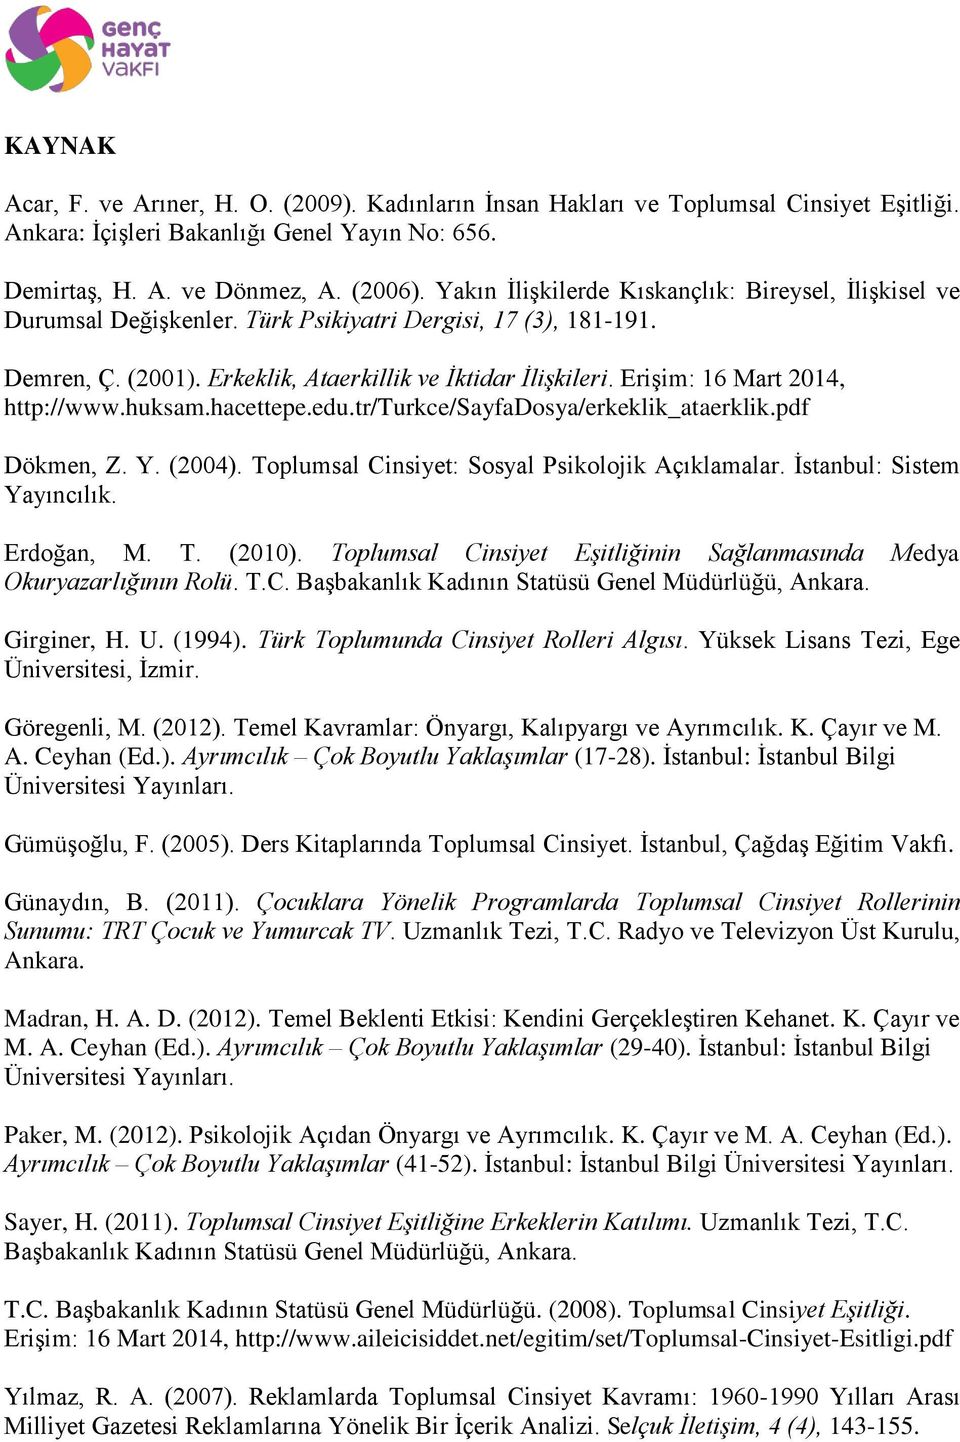 Erişim: 16 Mart 2014, http://www.huksam.hacettepe.edu.tr/turkce/sayfadosya/erkeklik_ataerklik.pdf Dökmen, Z. Y. (2004). Toplumsal Cinsiyet: Sosyal Psikolojik Açıklamalar. İstanbul: Sistem Yayıncılık.